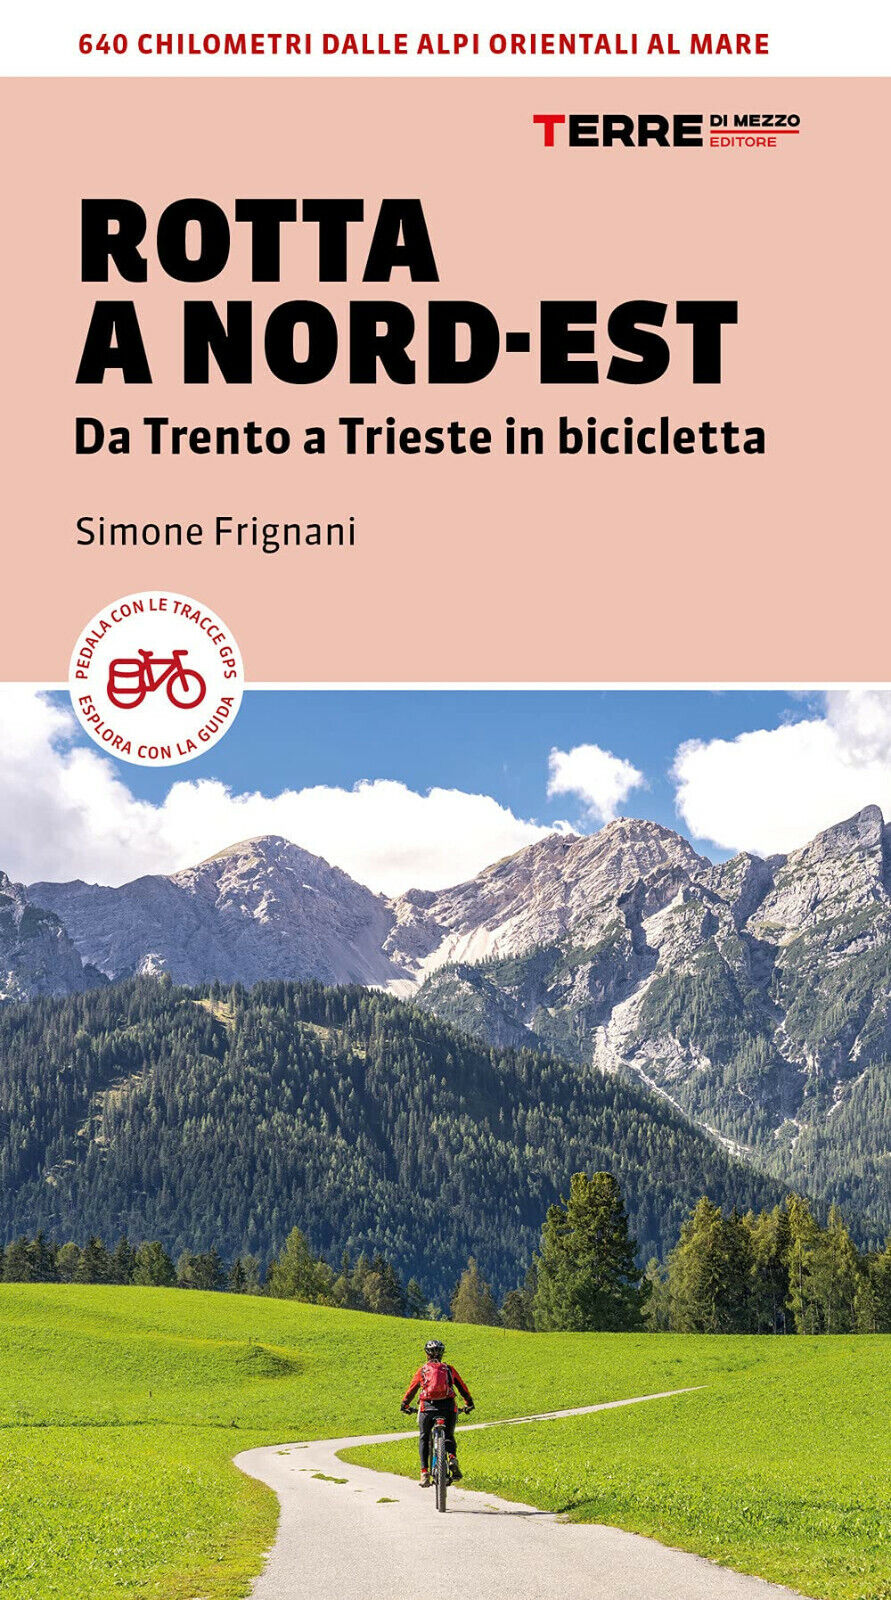 Italia coast to coast in bicicletta - Simone Frignani - terre di mezzo, 2022